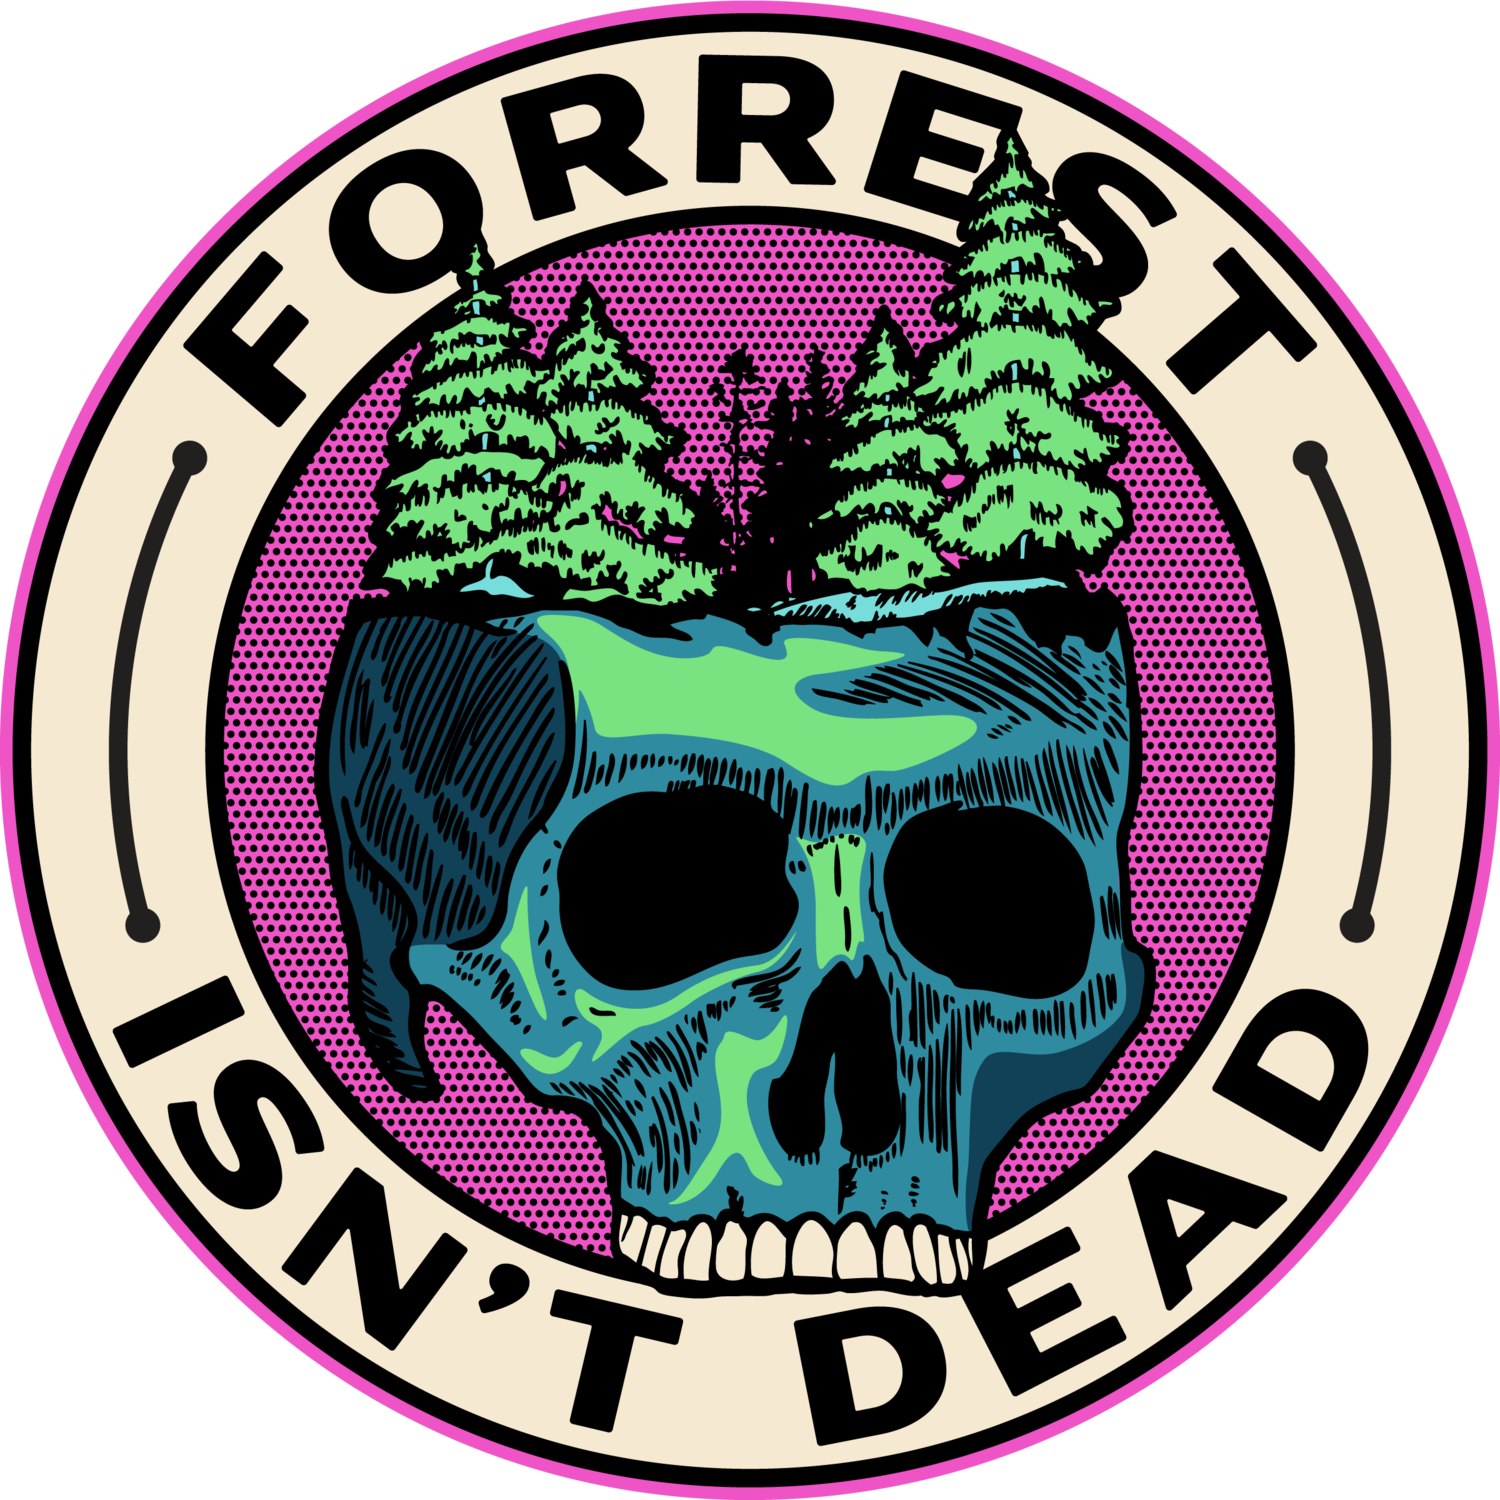 Forrest Isn't Dead